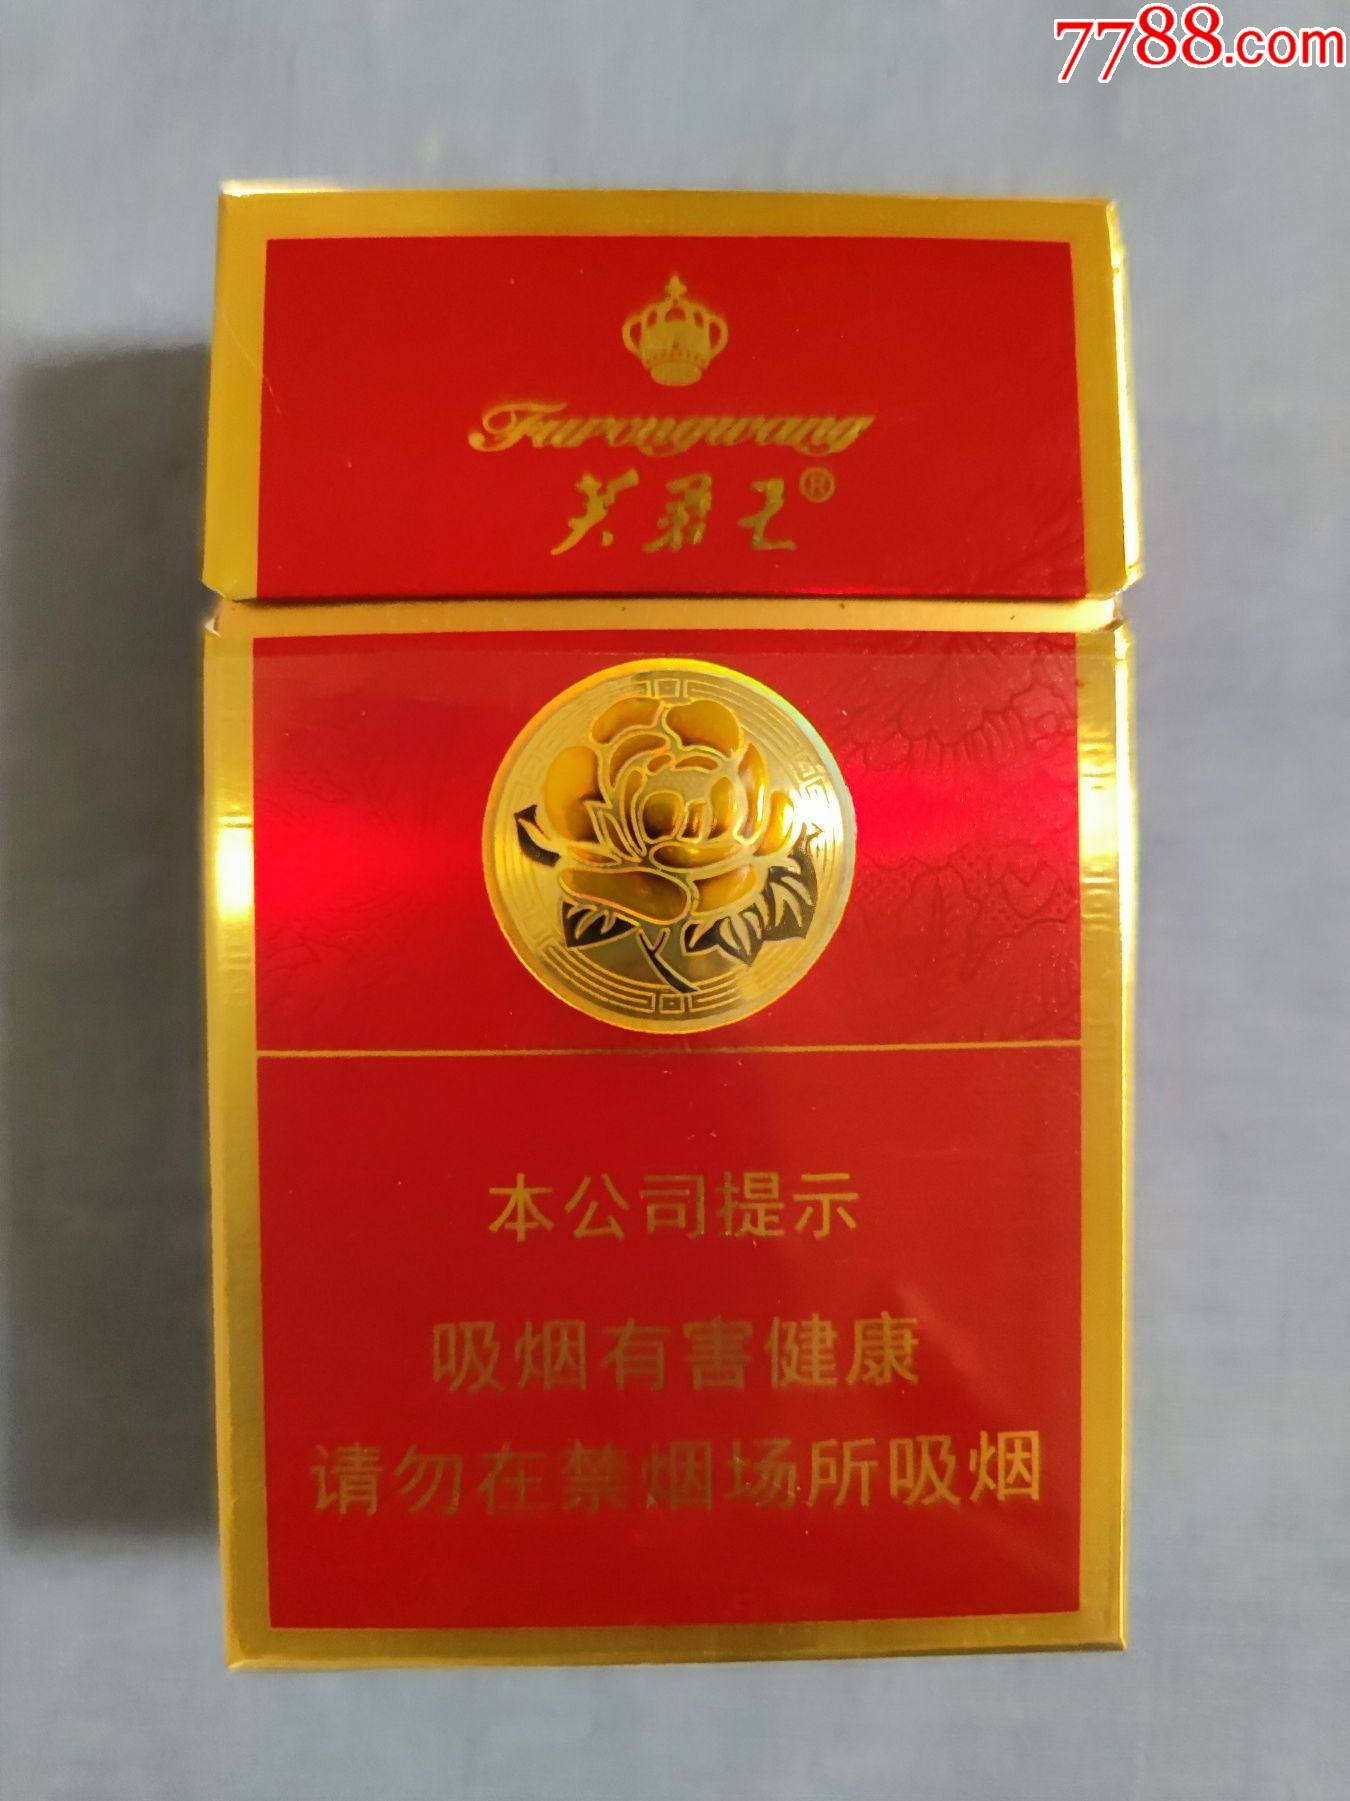 芙蓉王香烟种类图片